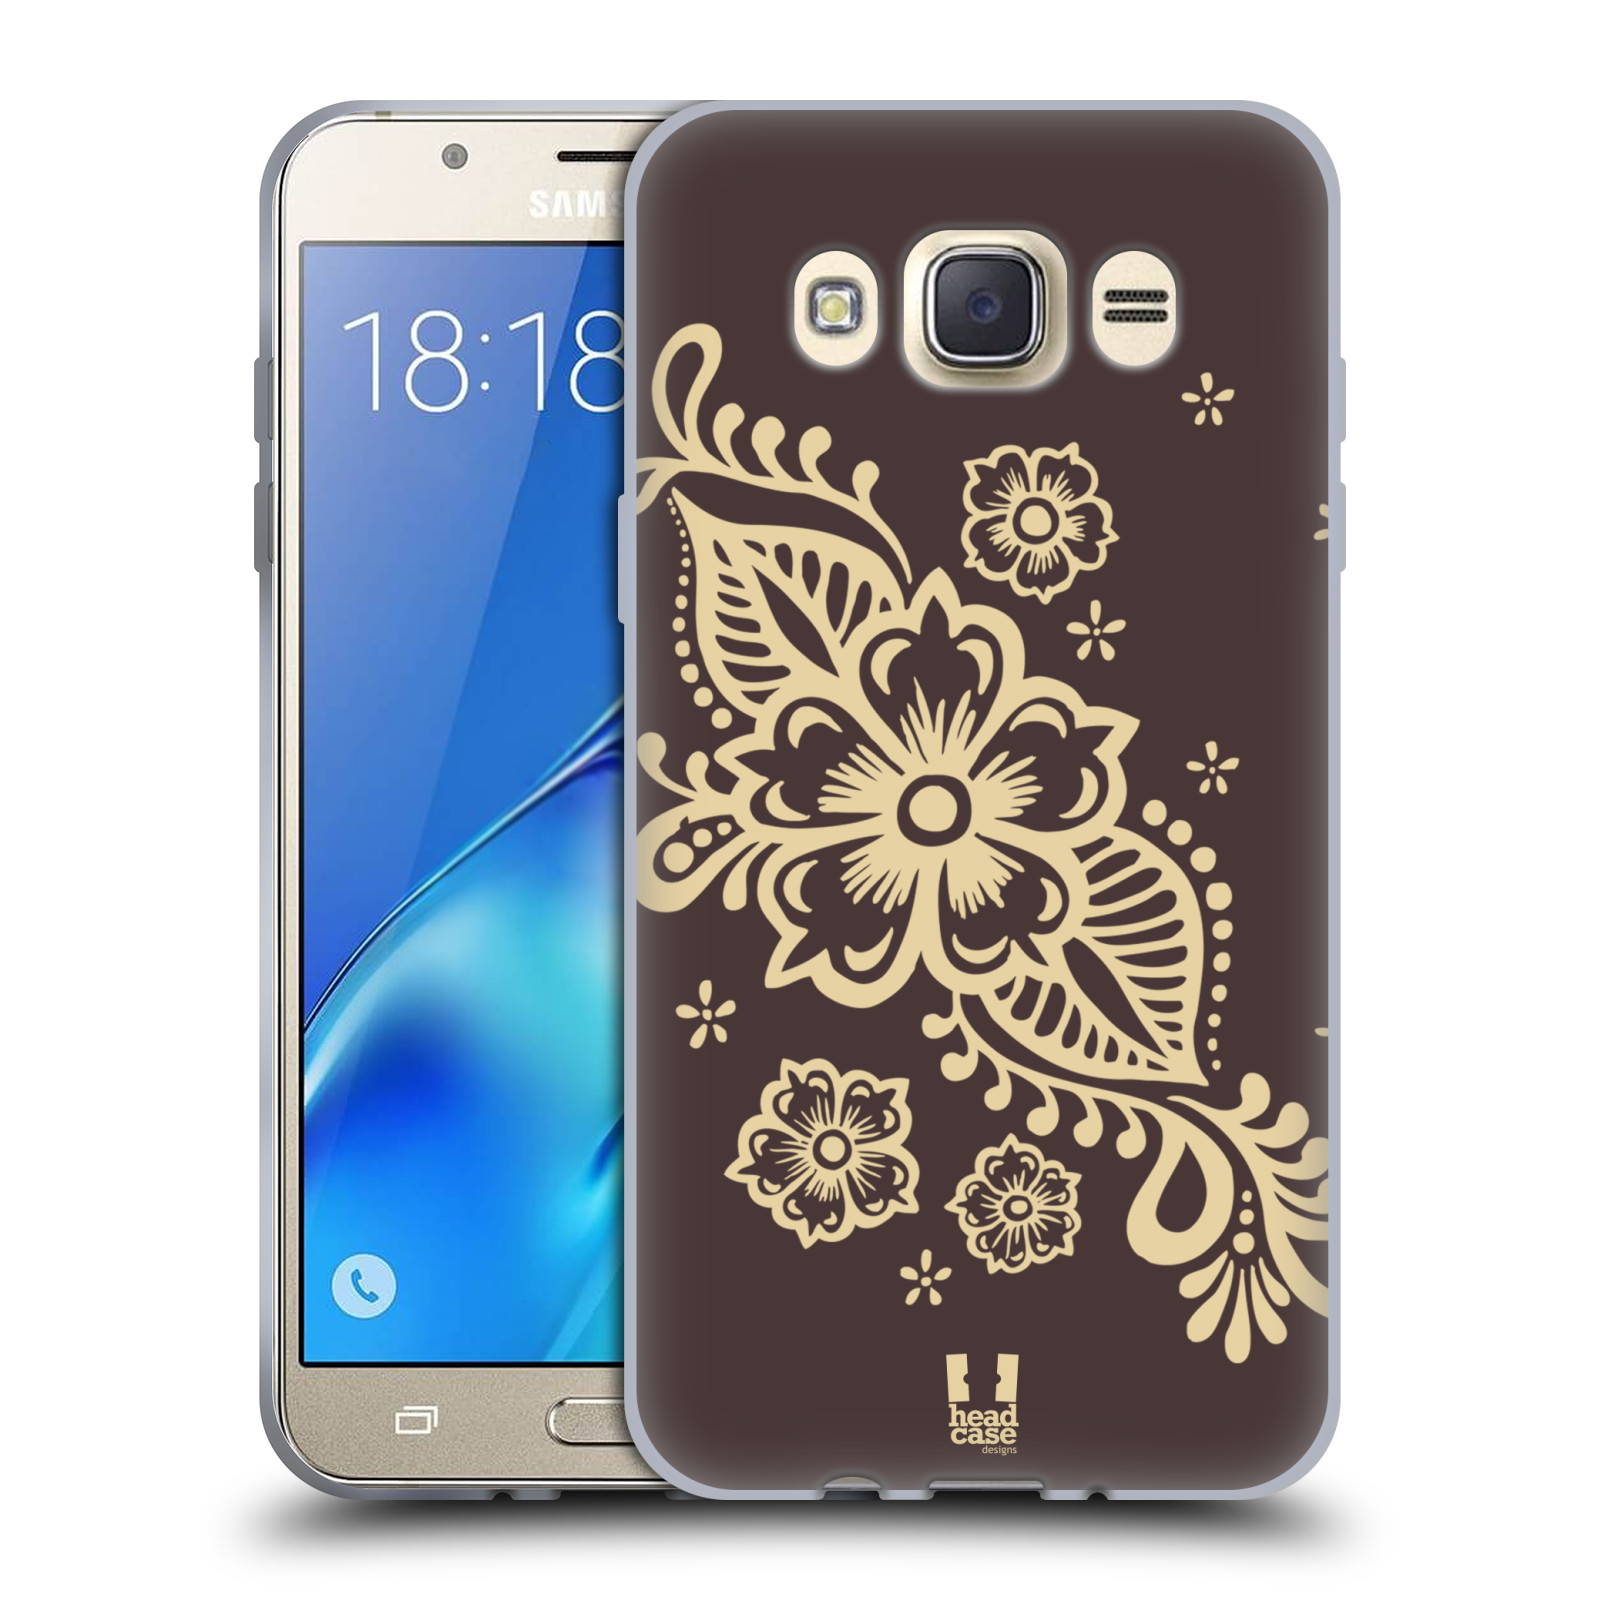 HEAD CASE silikonový obal, kryt na mobil Samsung Galaxy J7 2016 (J710, J710F) vzor Hena tetování VÍNO